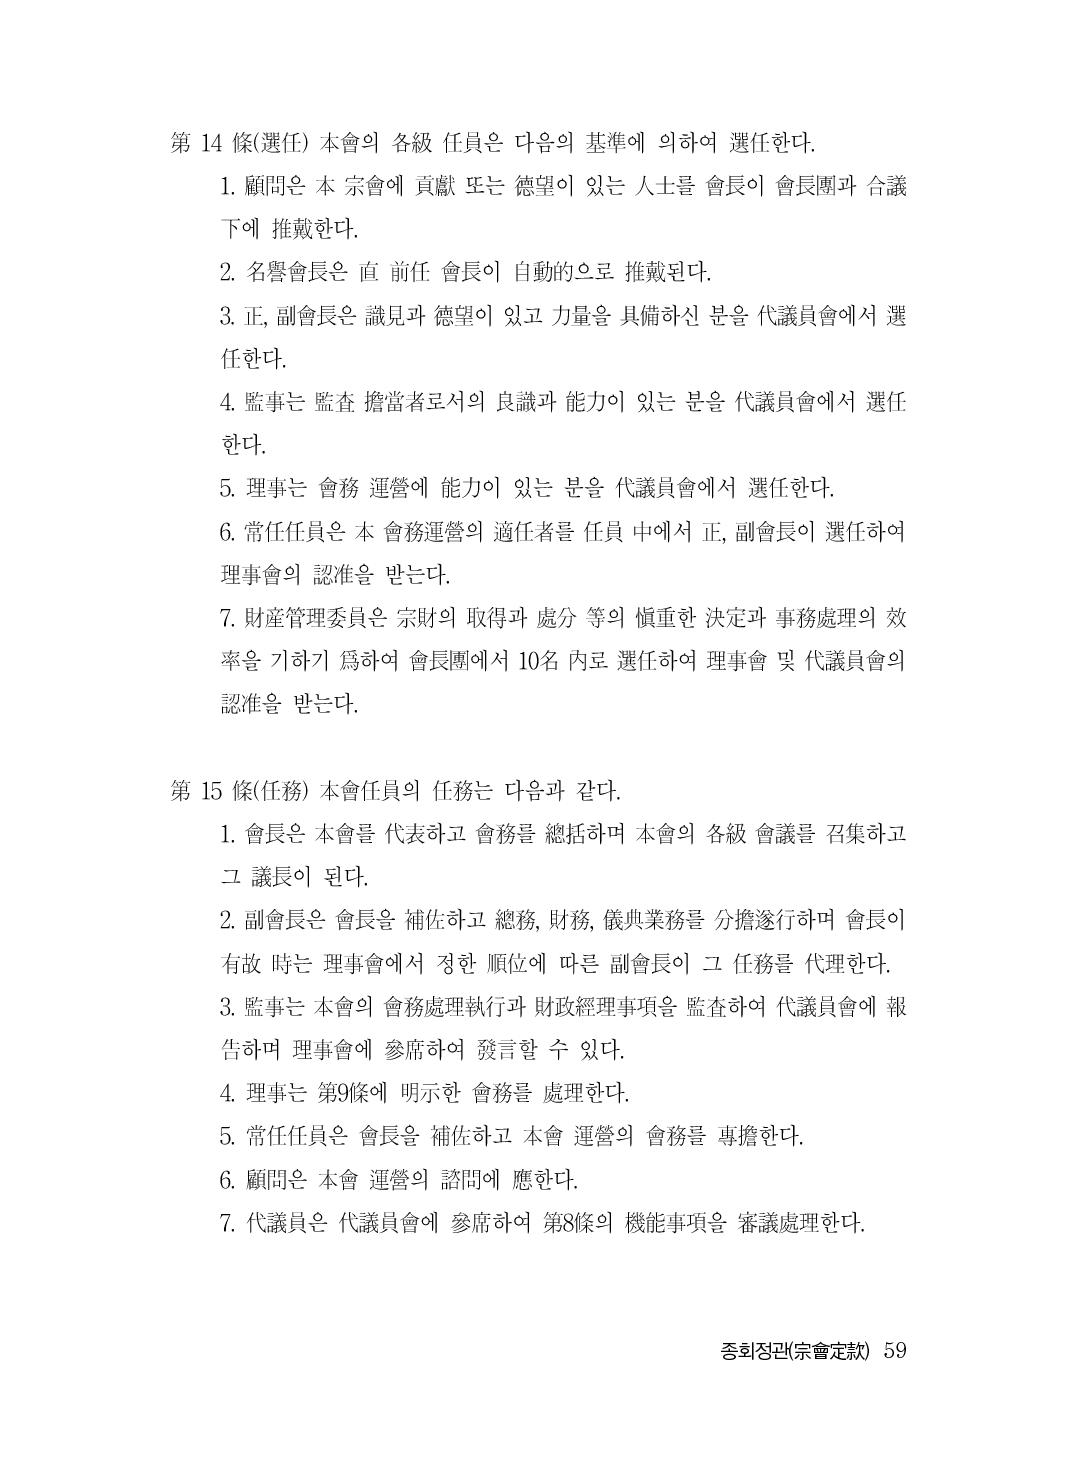 (전체) 송산종보(27호)(최종)_60.jpg